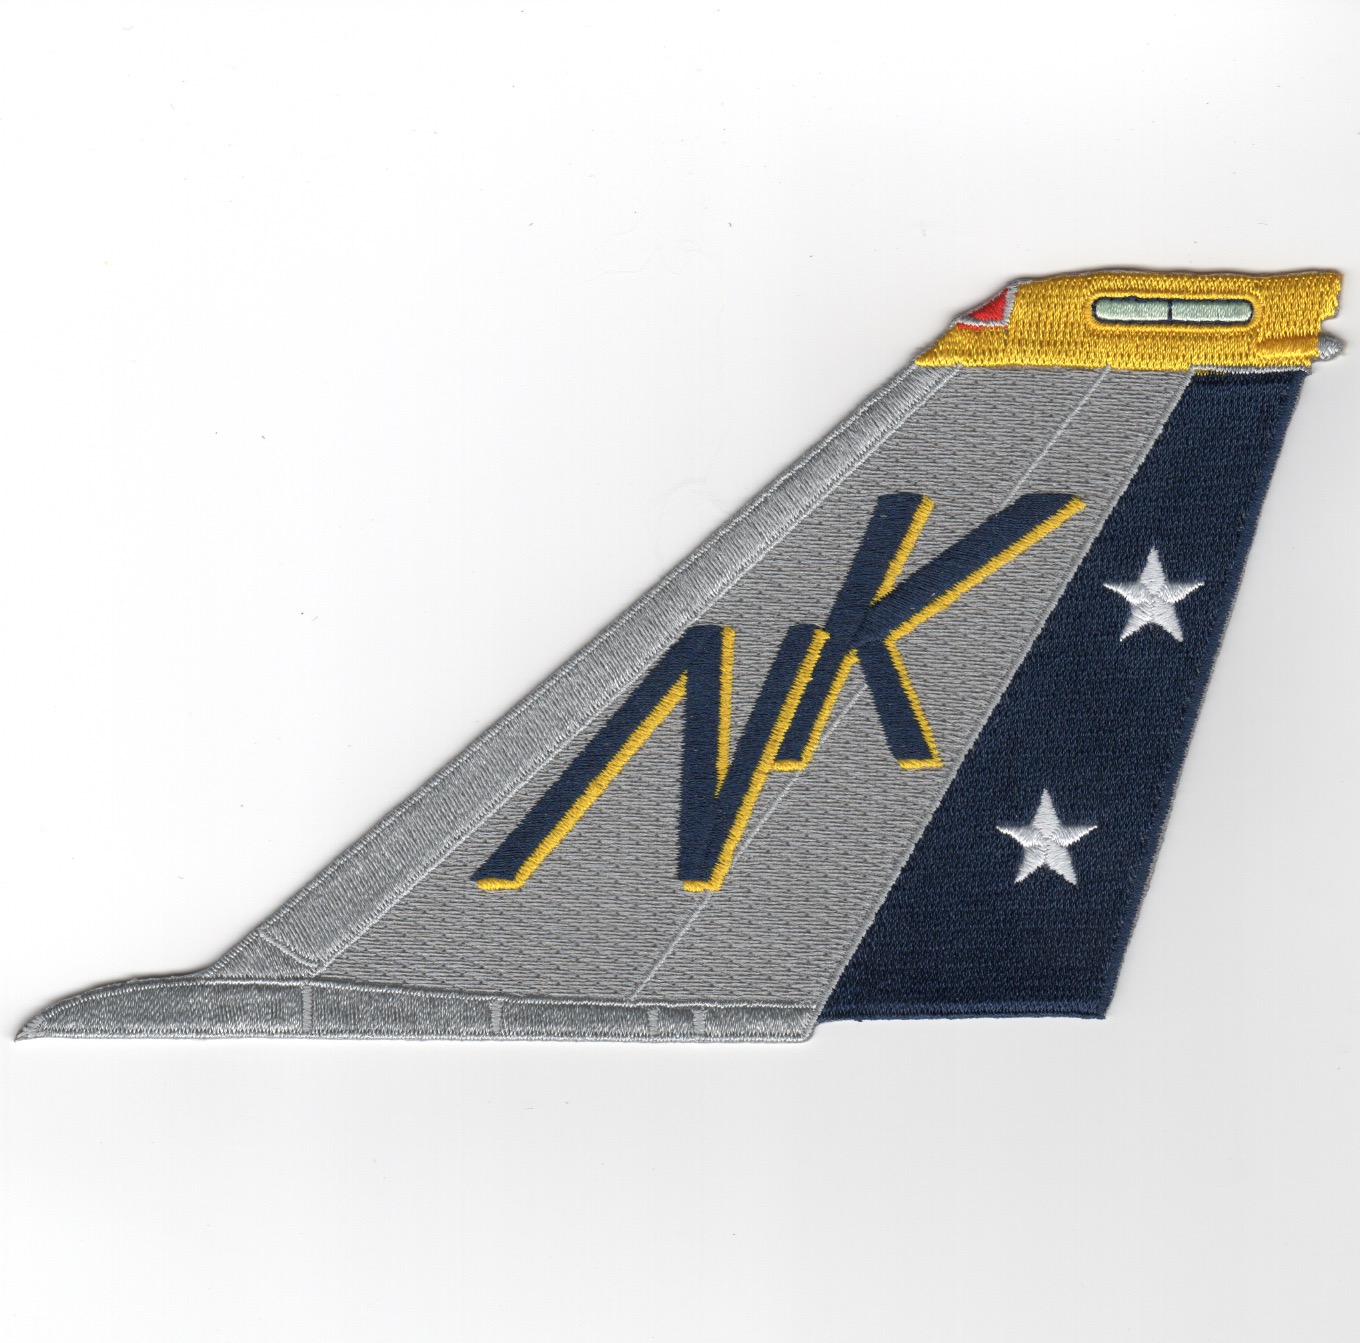 VF-2 F-14 Tomcat Tail (NK/Stars/No Text)